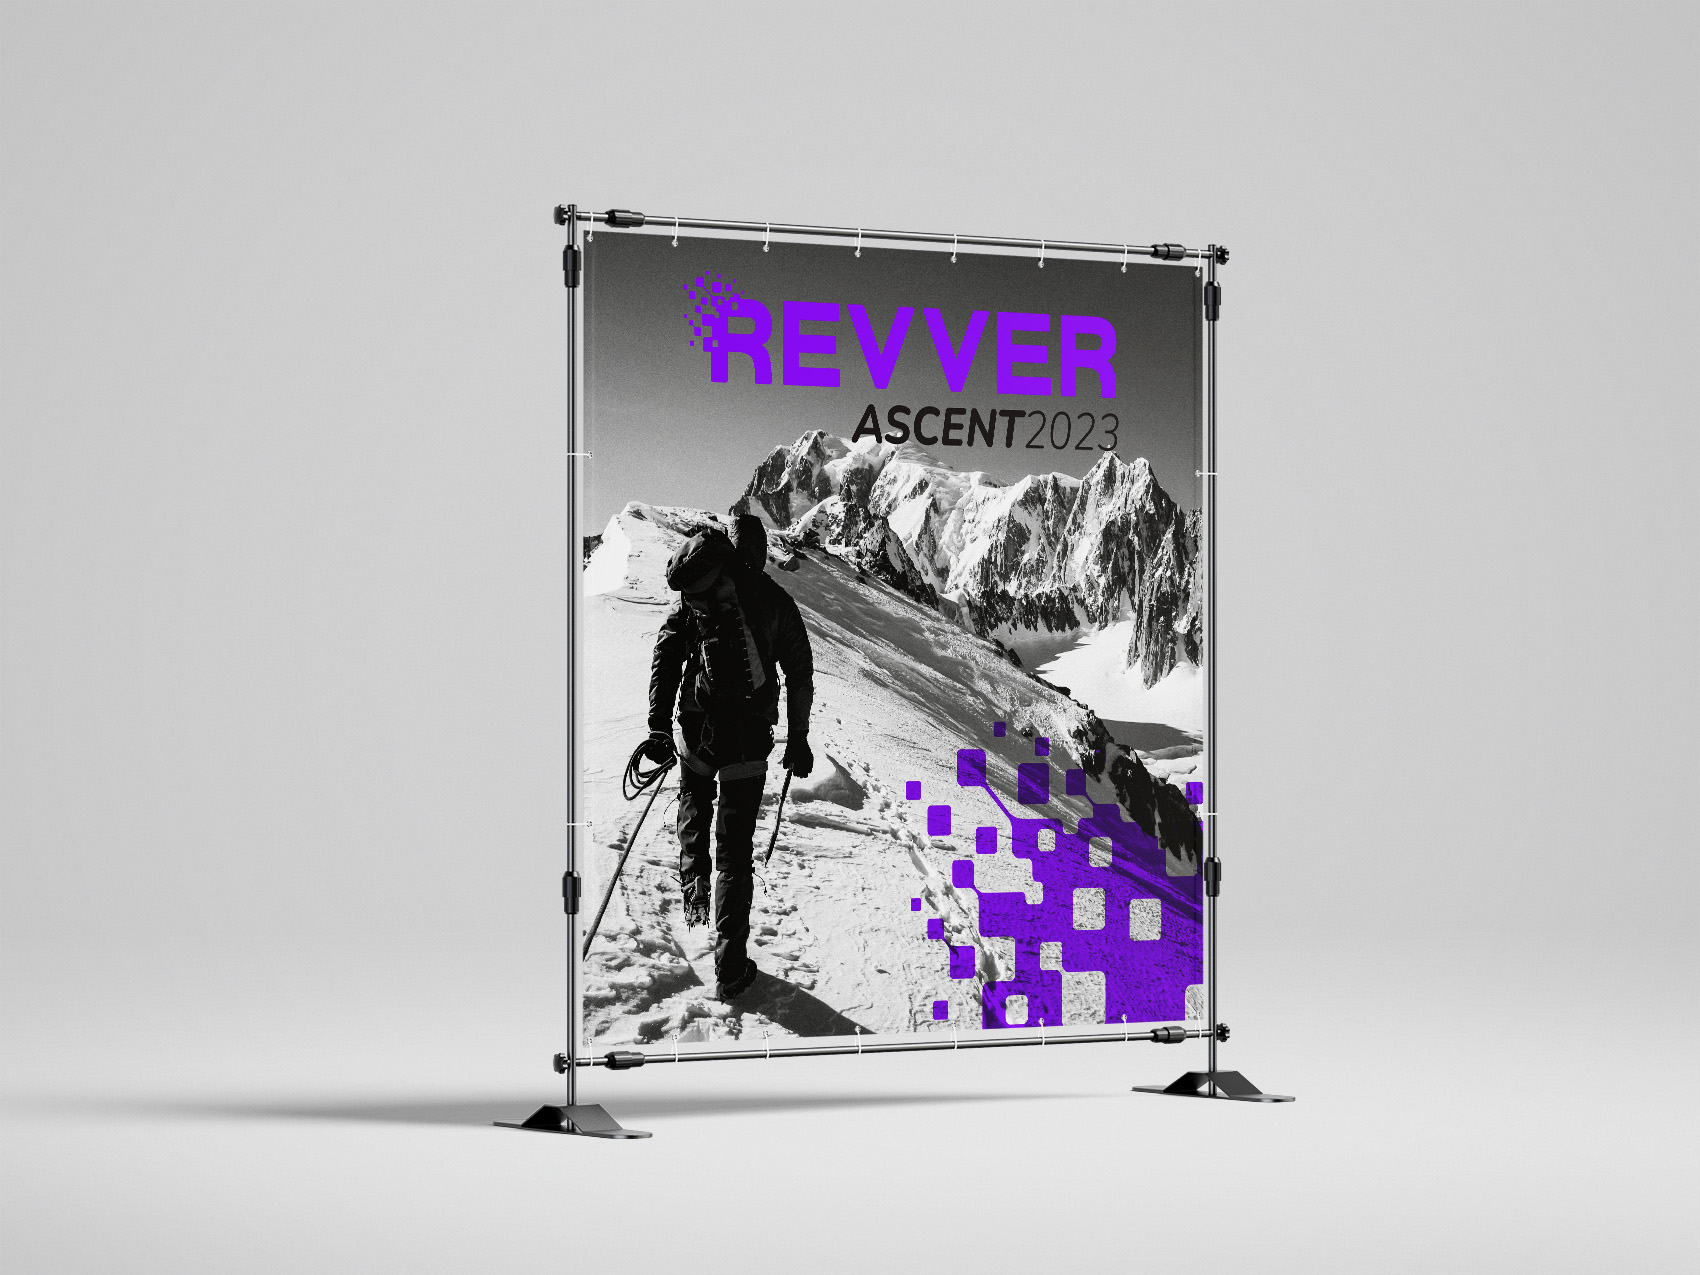 ascent sko 2023 event banner